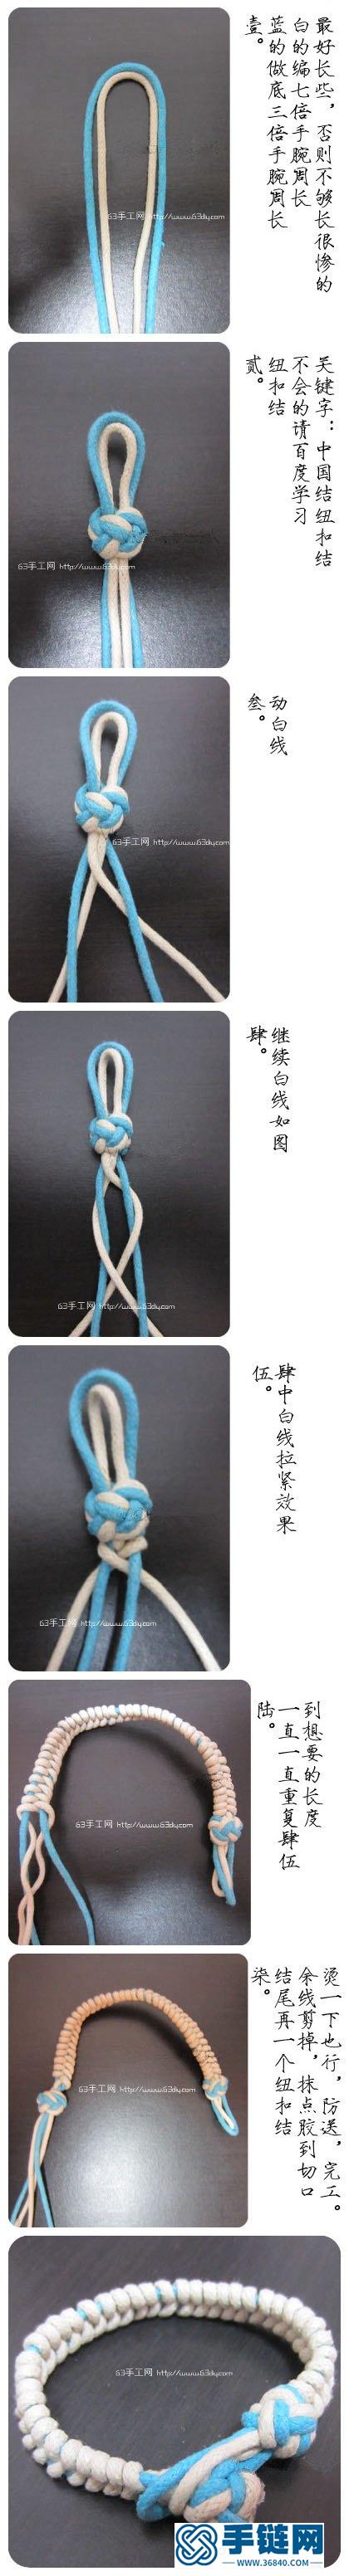 男女都适合的清新手链编织方法教程